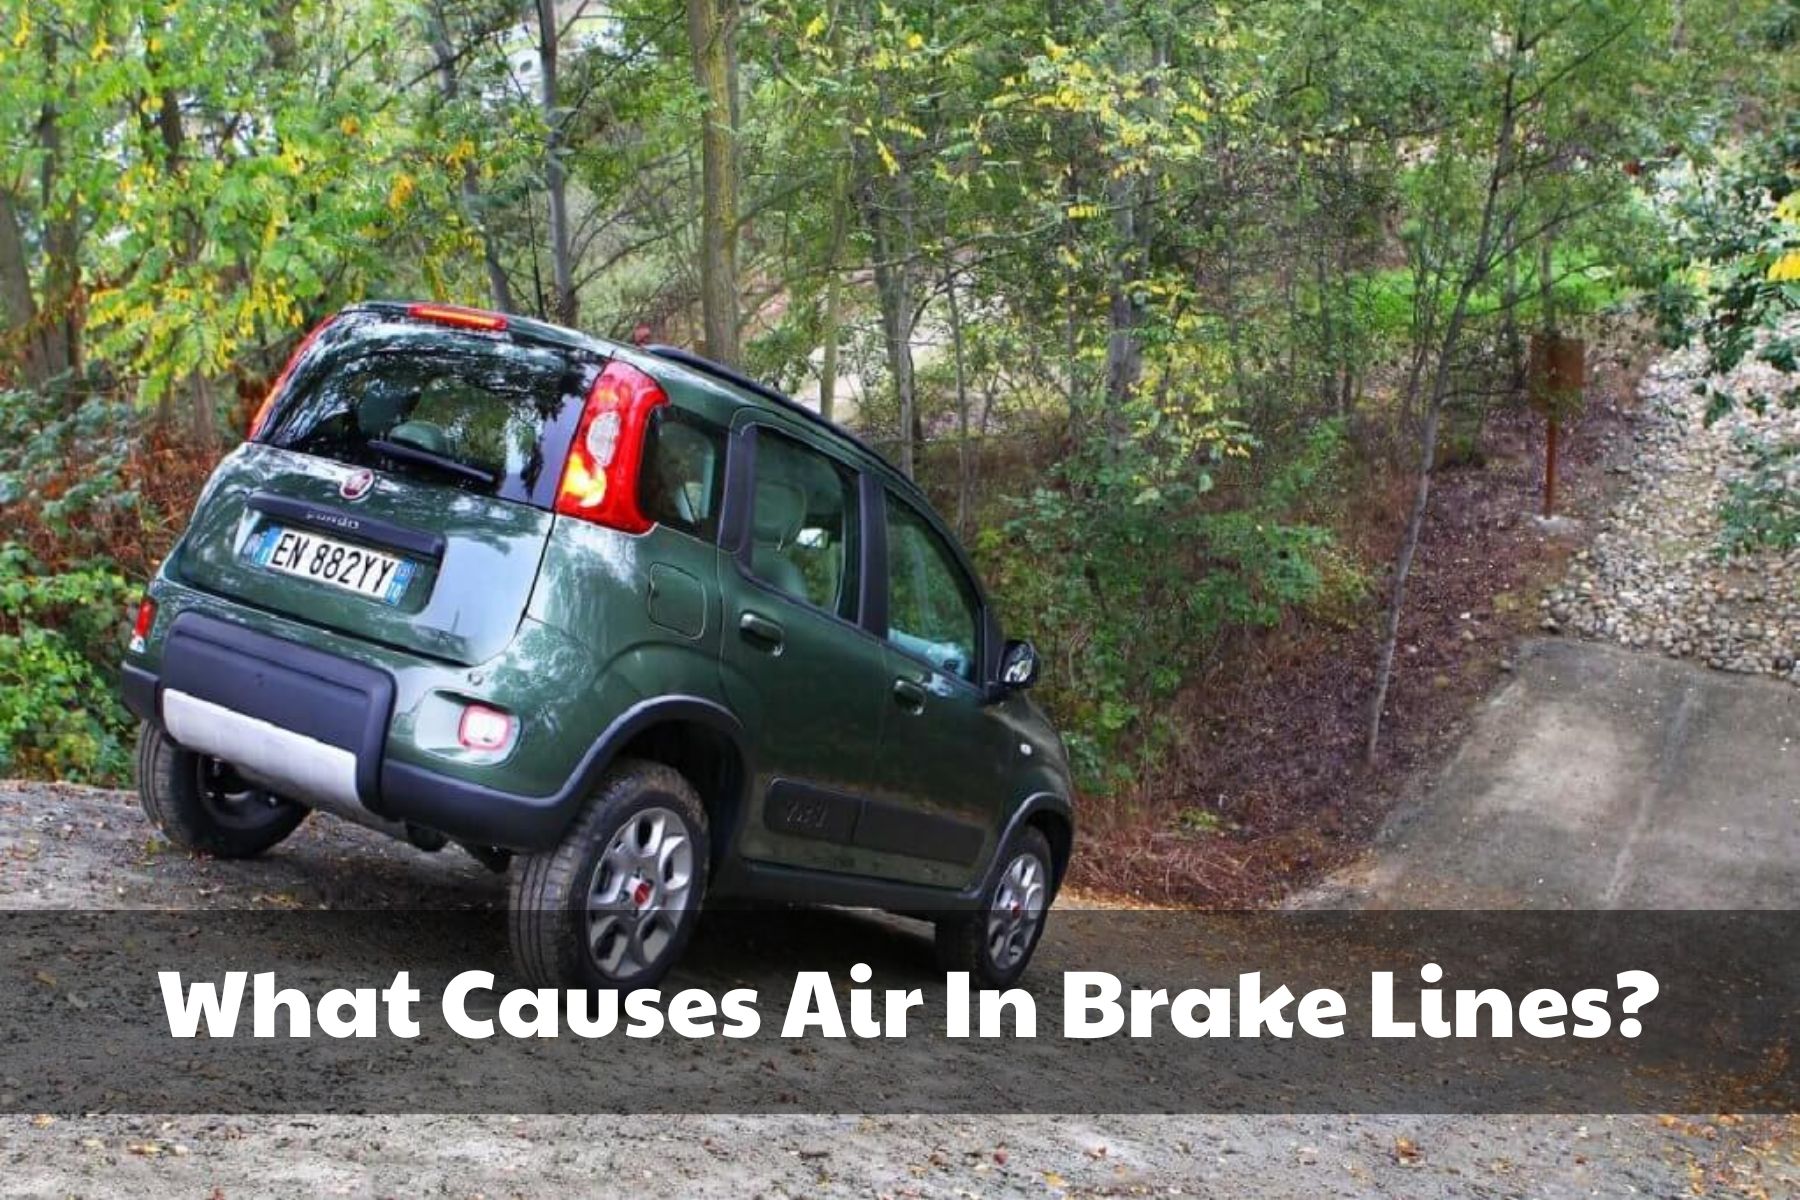 Air-In-Brake-Line-Symptoms (1)